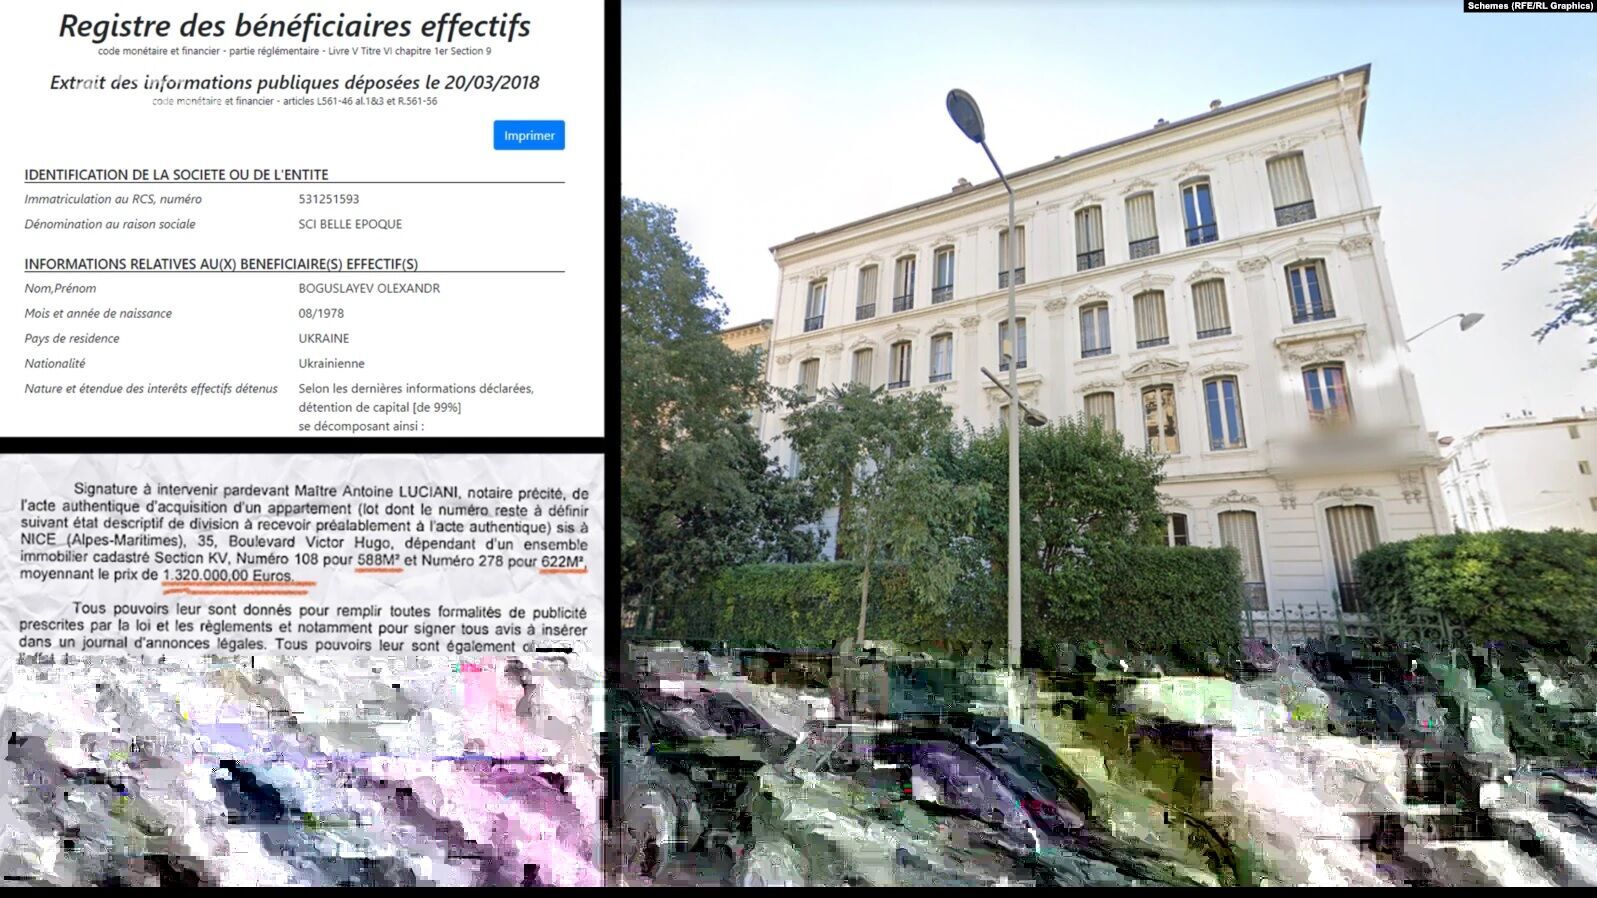 В семье арестованного Богуслаева обнаружили элитную недвижимость во Франции. Расследование